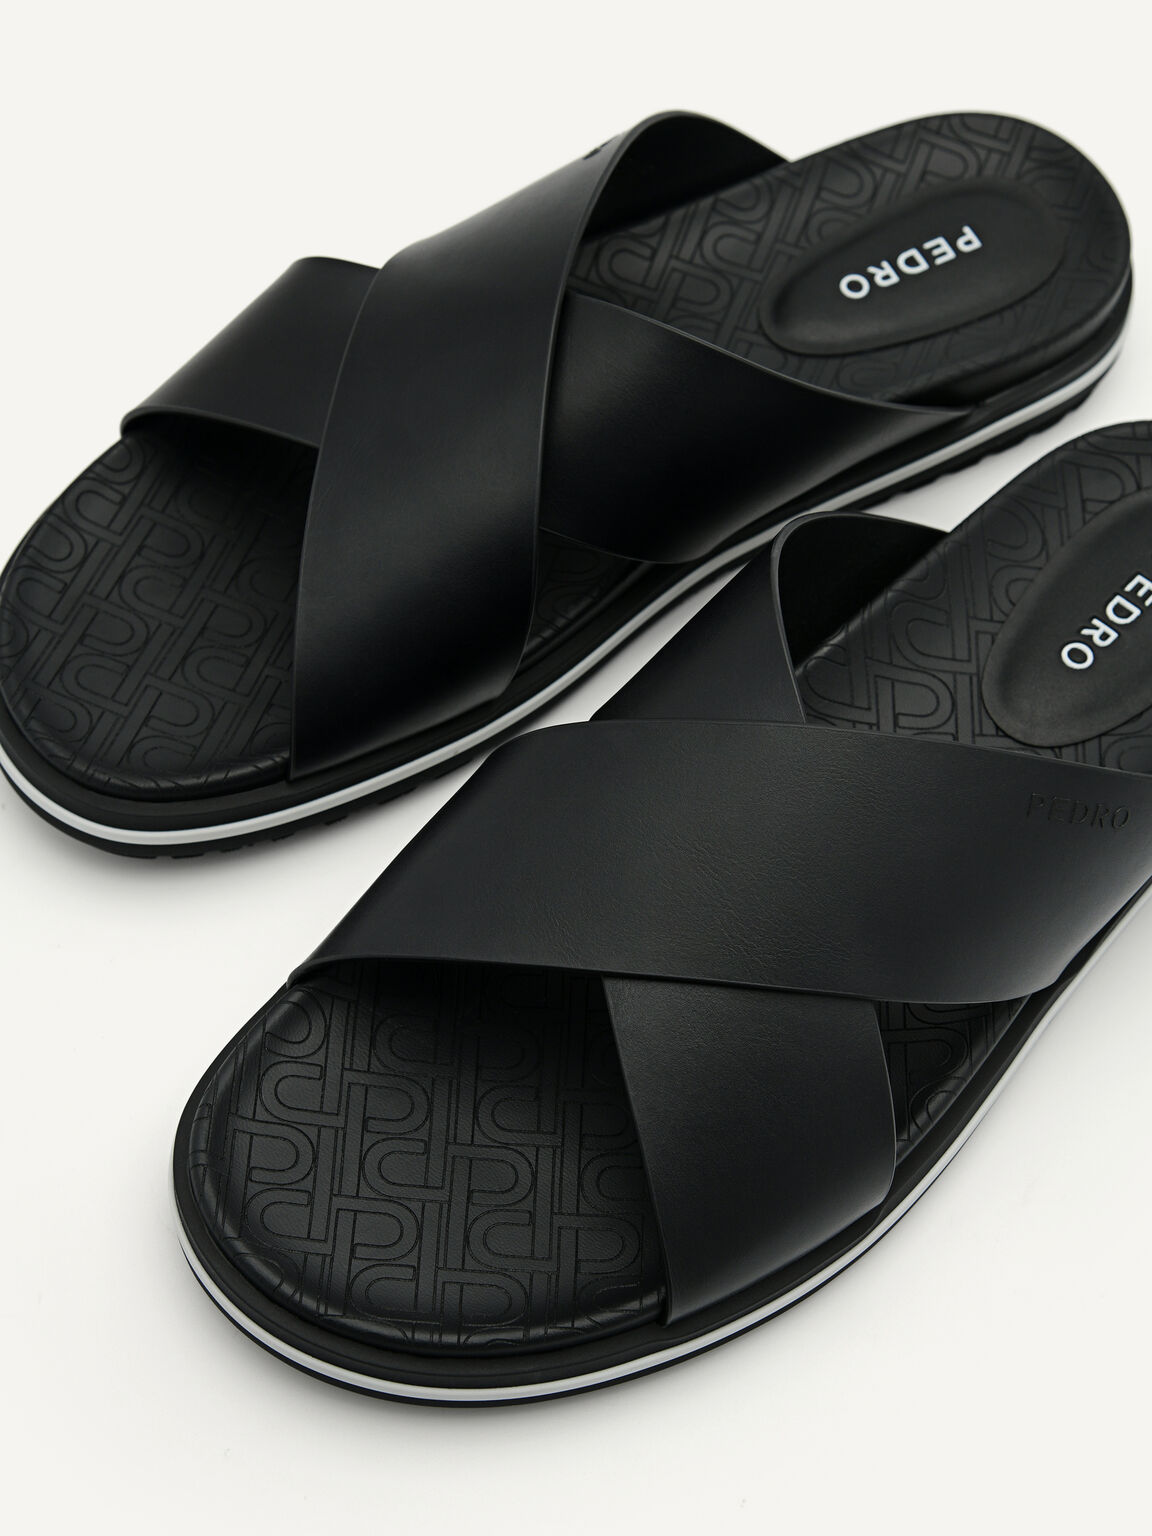 PEDRO Icon Cross Strap Sandals, Black